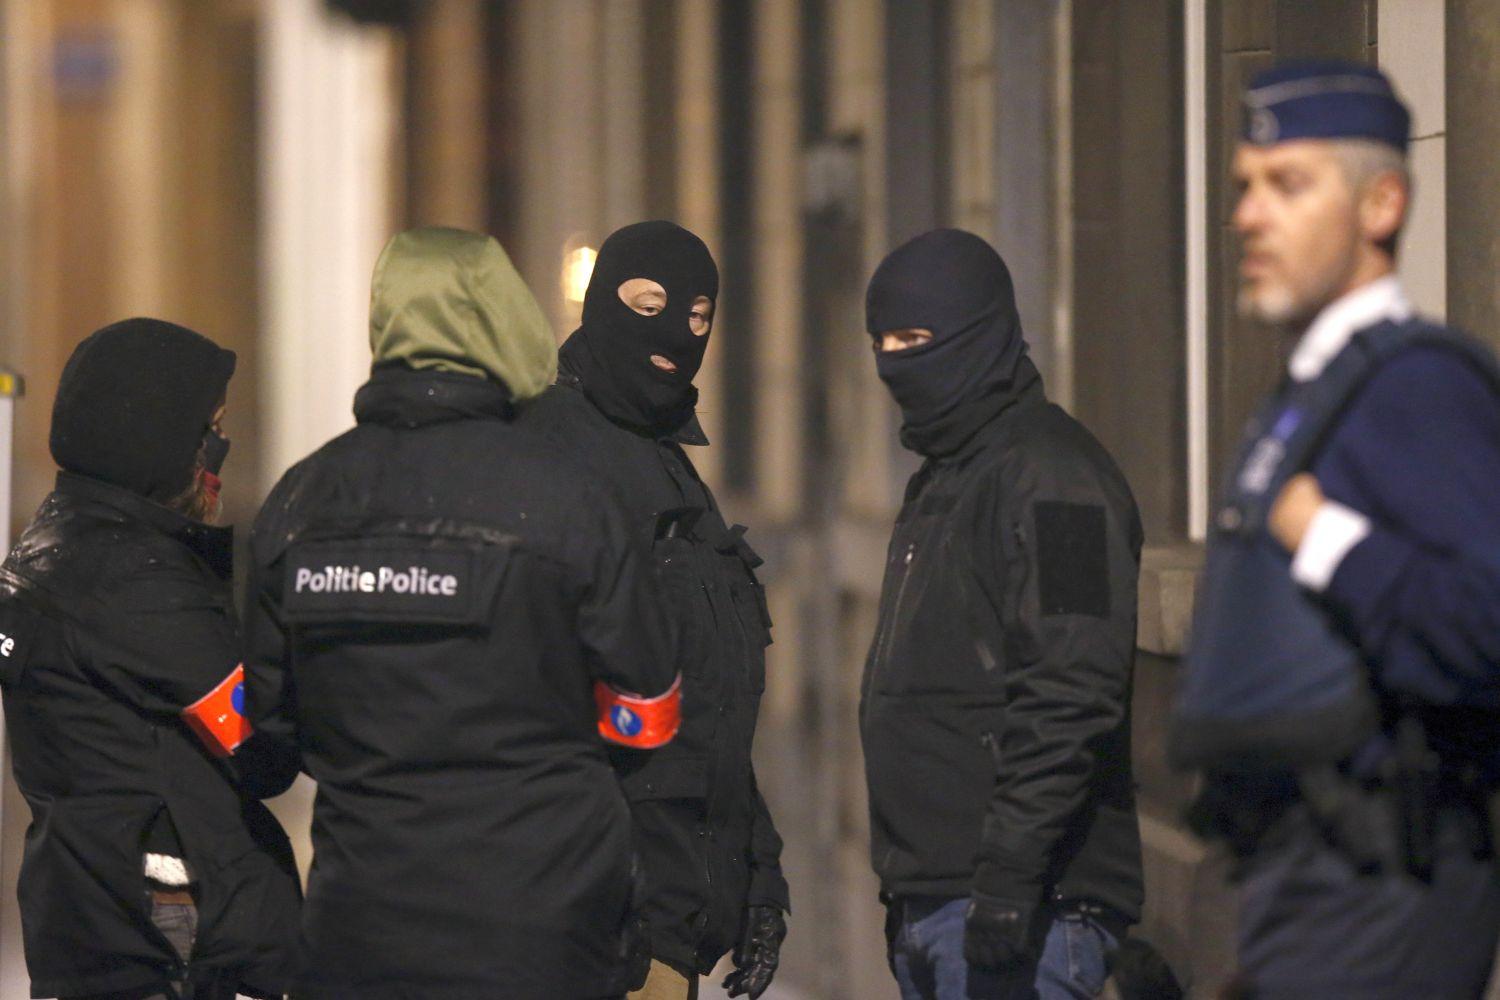 Hat embert tartóztattak le Brüsszelben a házkutatás során